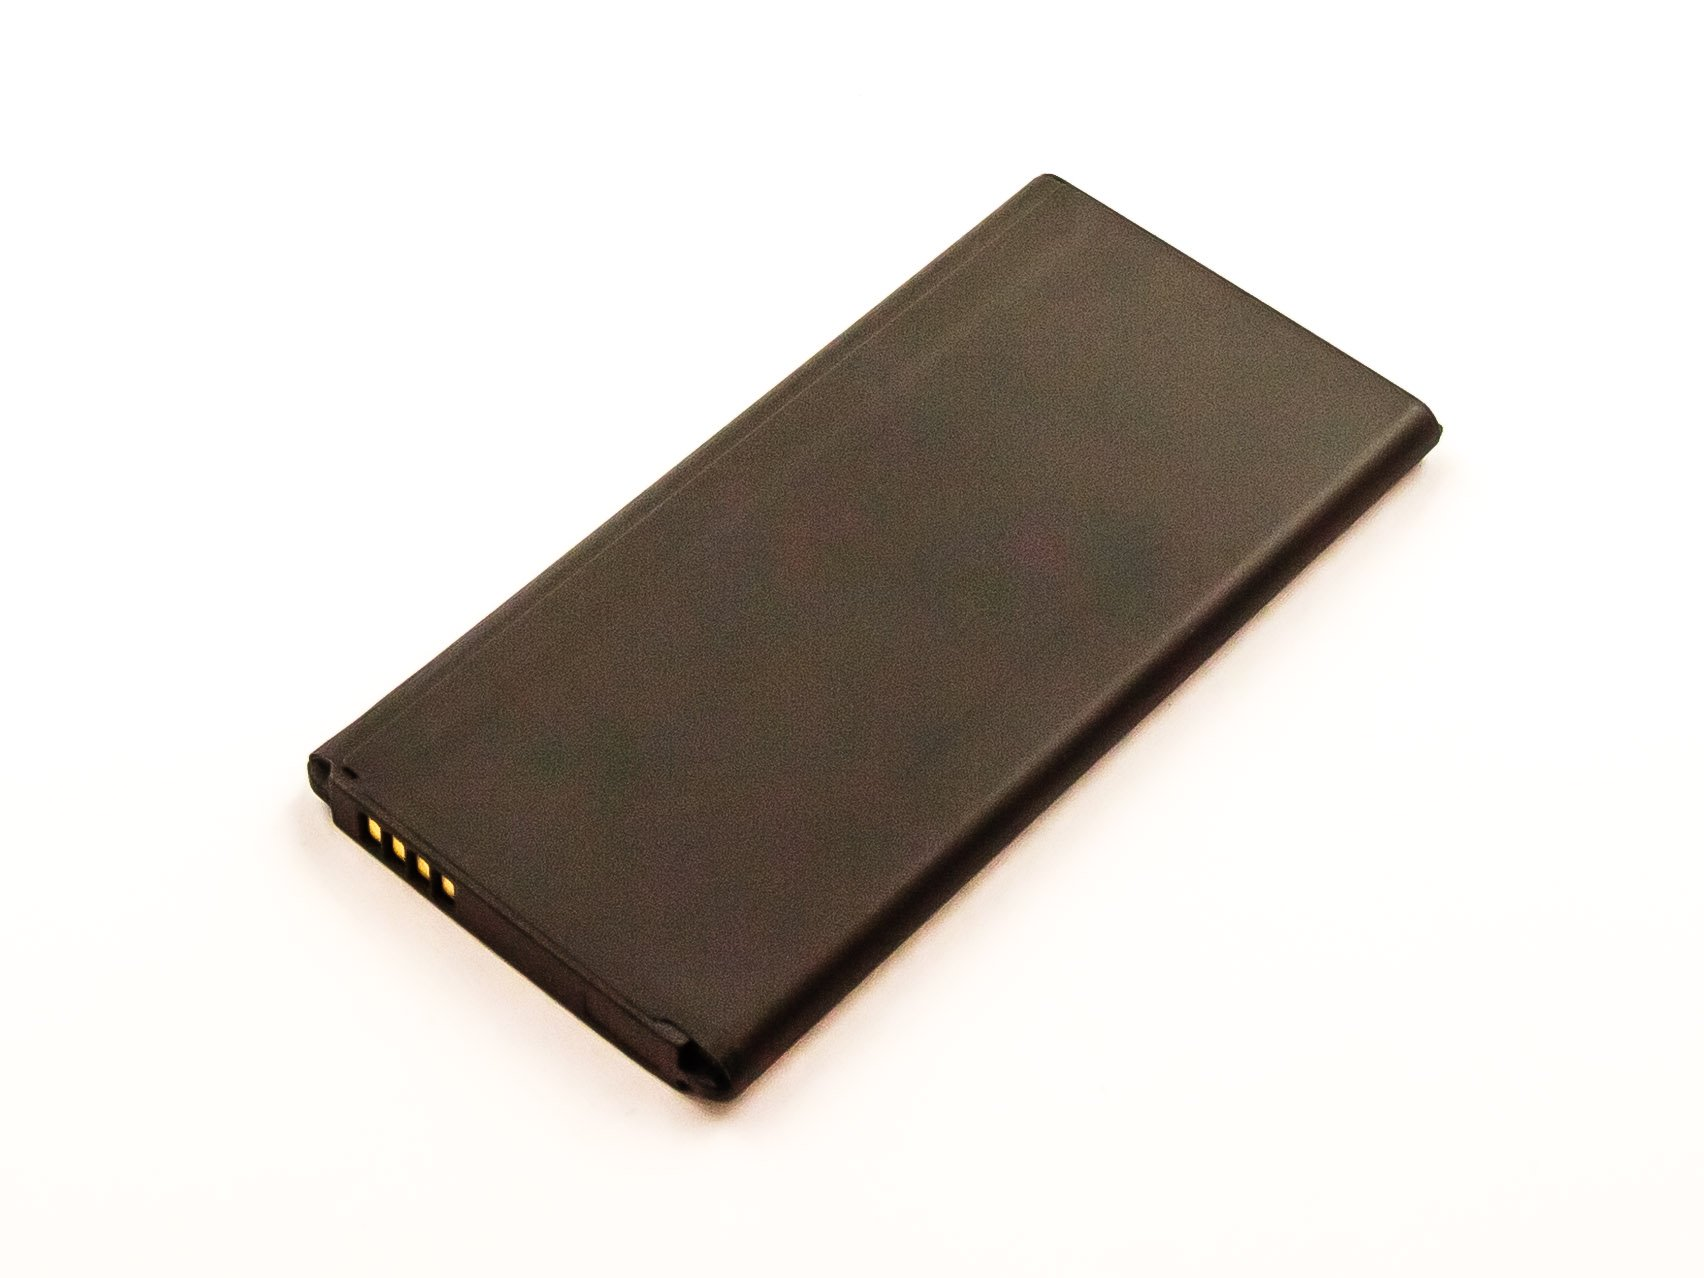 AGI Akku kompatibel mit Li-Ion mAh Samsung 2800 3.85 GT-I9700 Handy-/Smartphoneakku, Volt